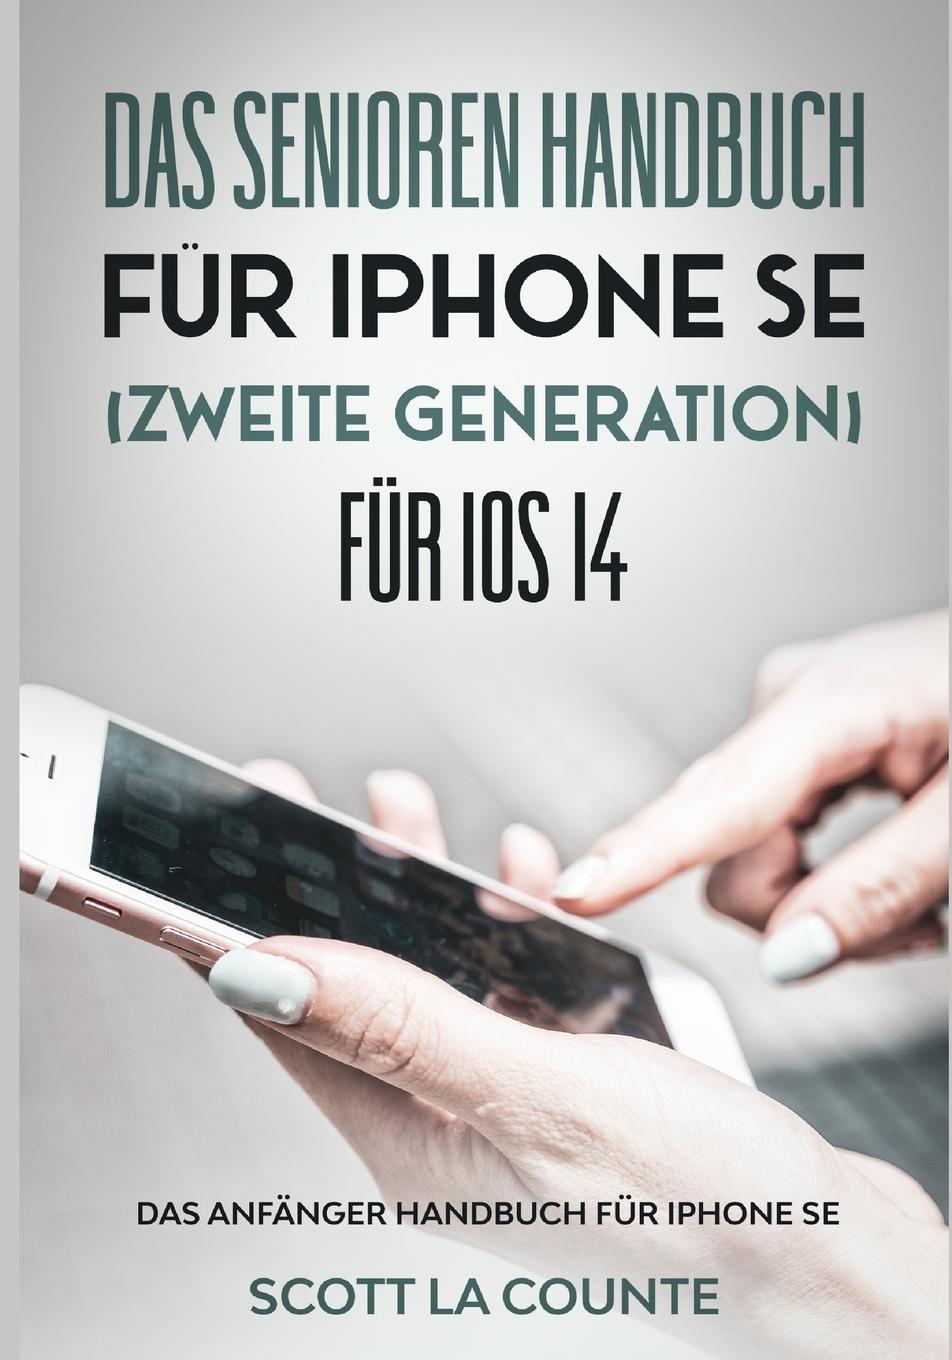 Carte Senioren handbuch fur Iphone SE (Zweite Generation) Fur IOS 14 